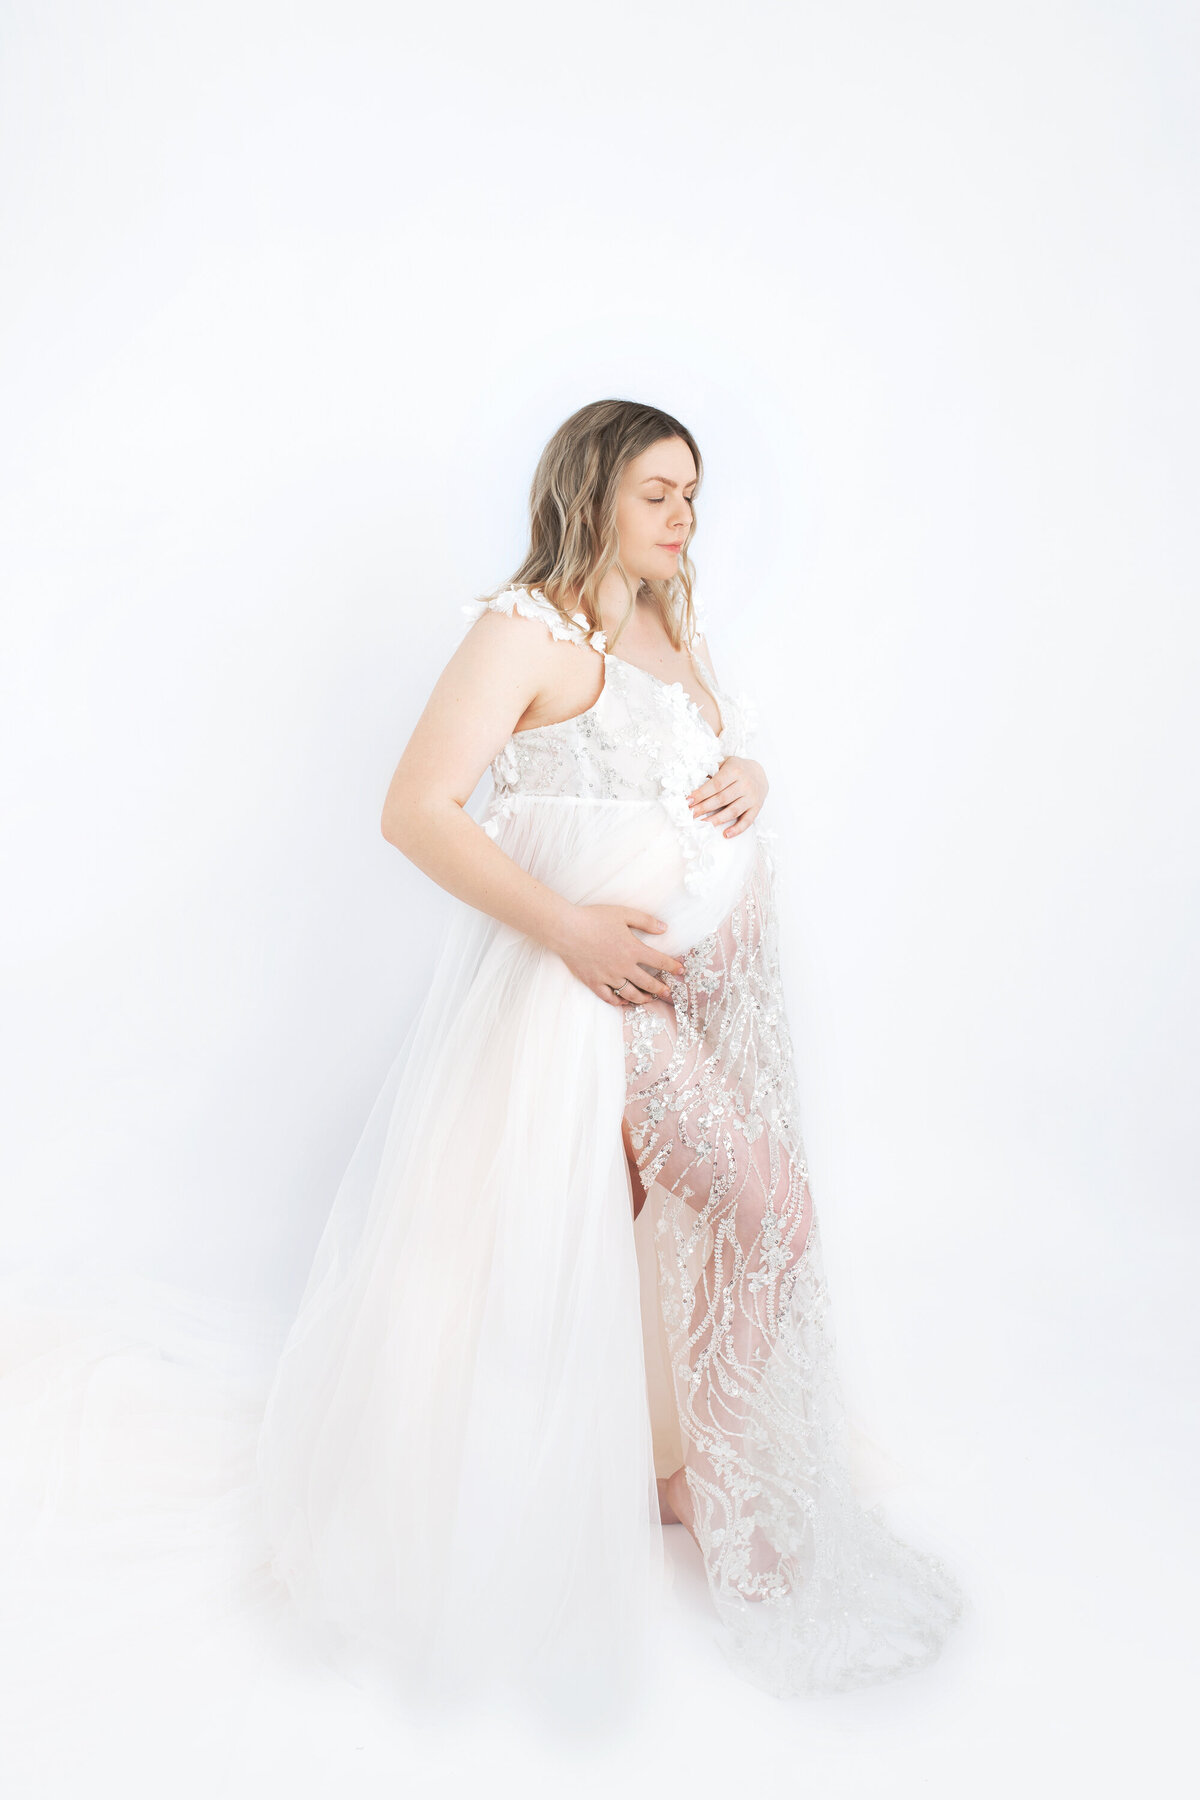 Hobart Studio Maternity Newborn Photographer